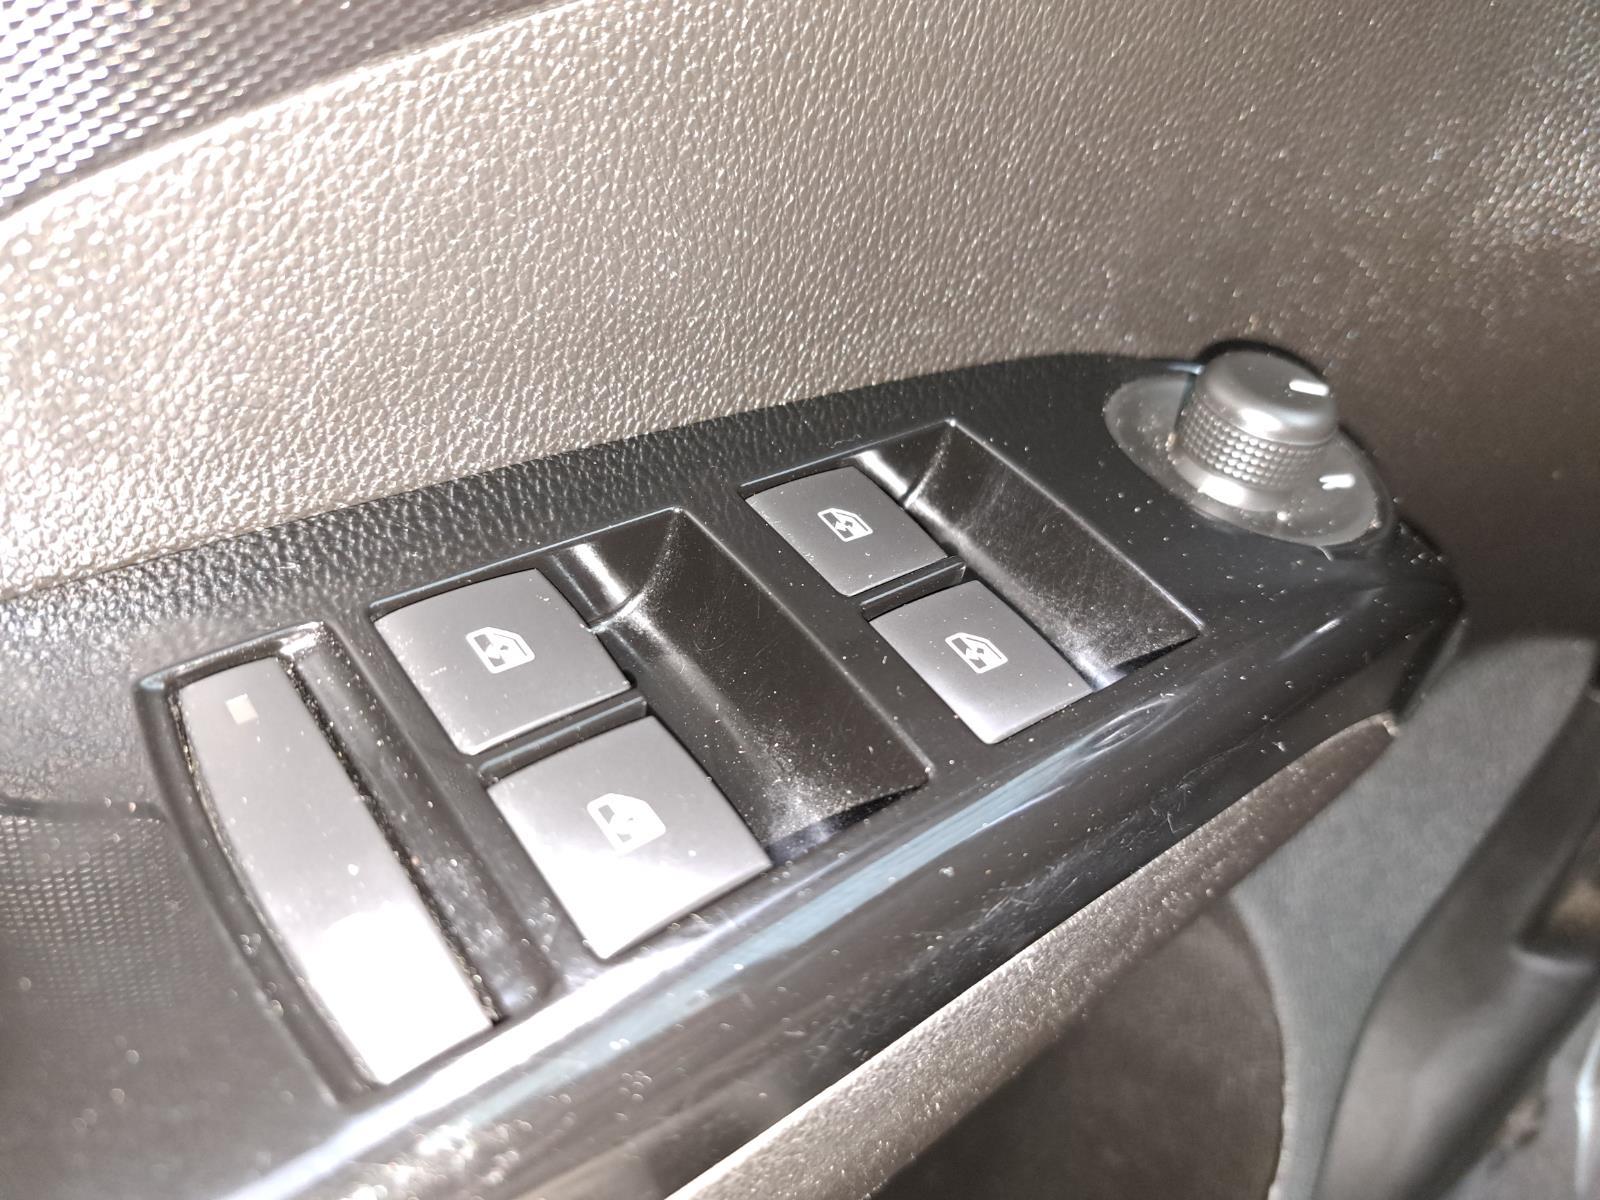 2019 Chevrolet Sonic LT Sedan 5 Dr. Front Wheel Drive mobile thumbnail 24